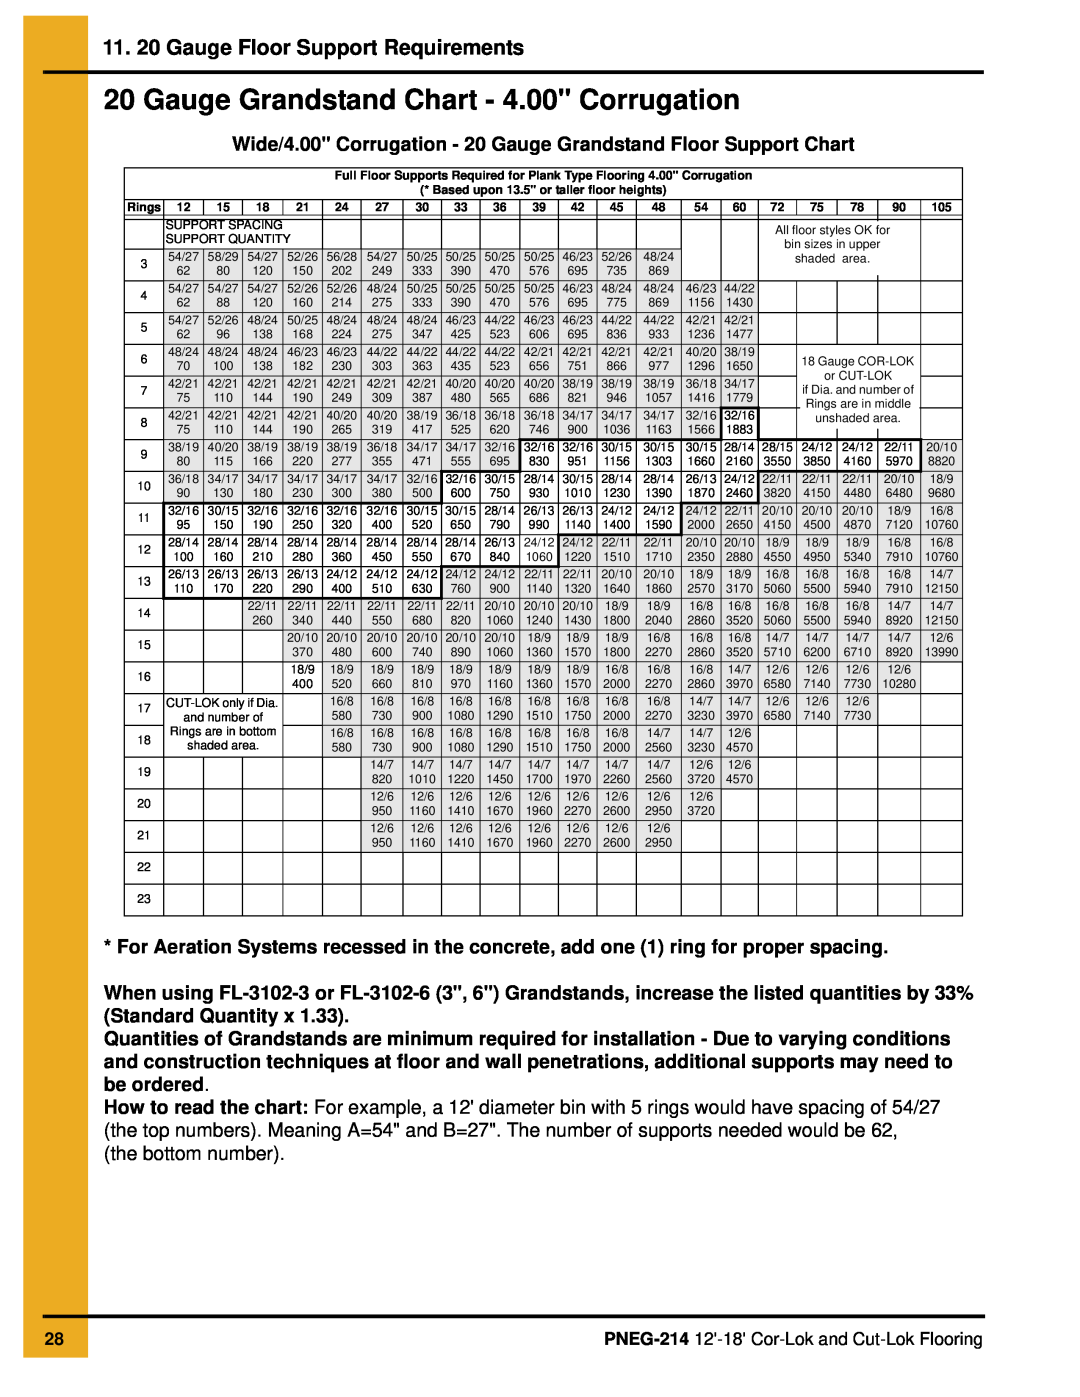 GSI Outdoors PNEG-214 Gauge Grandstand Chart - 4.00 Corrugation, 11. 20 Gauge Floor Support Requirements 